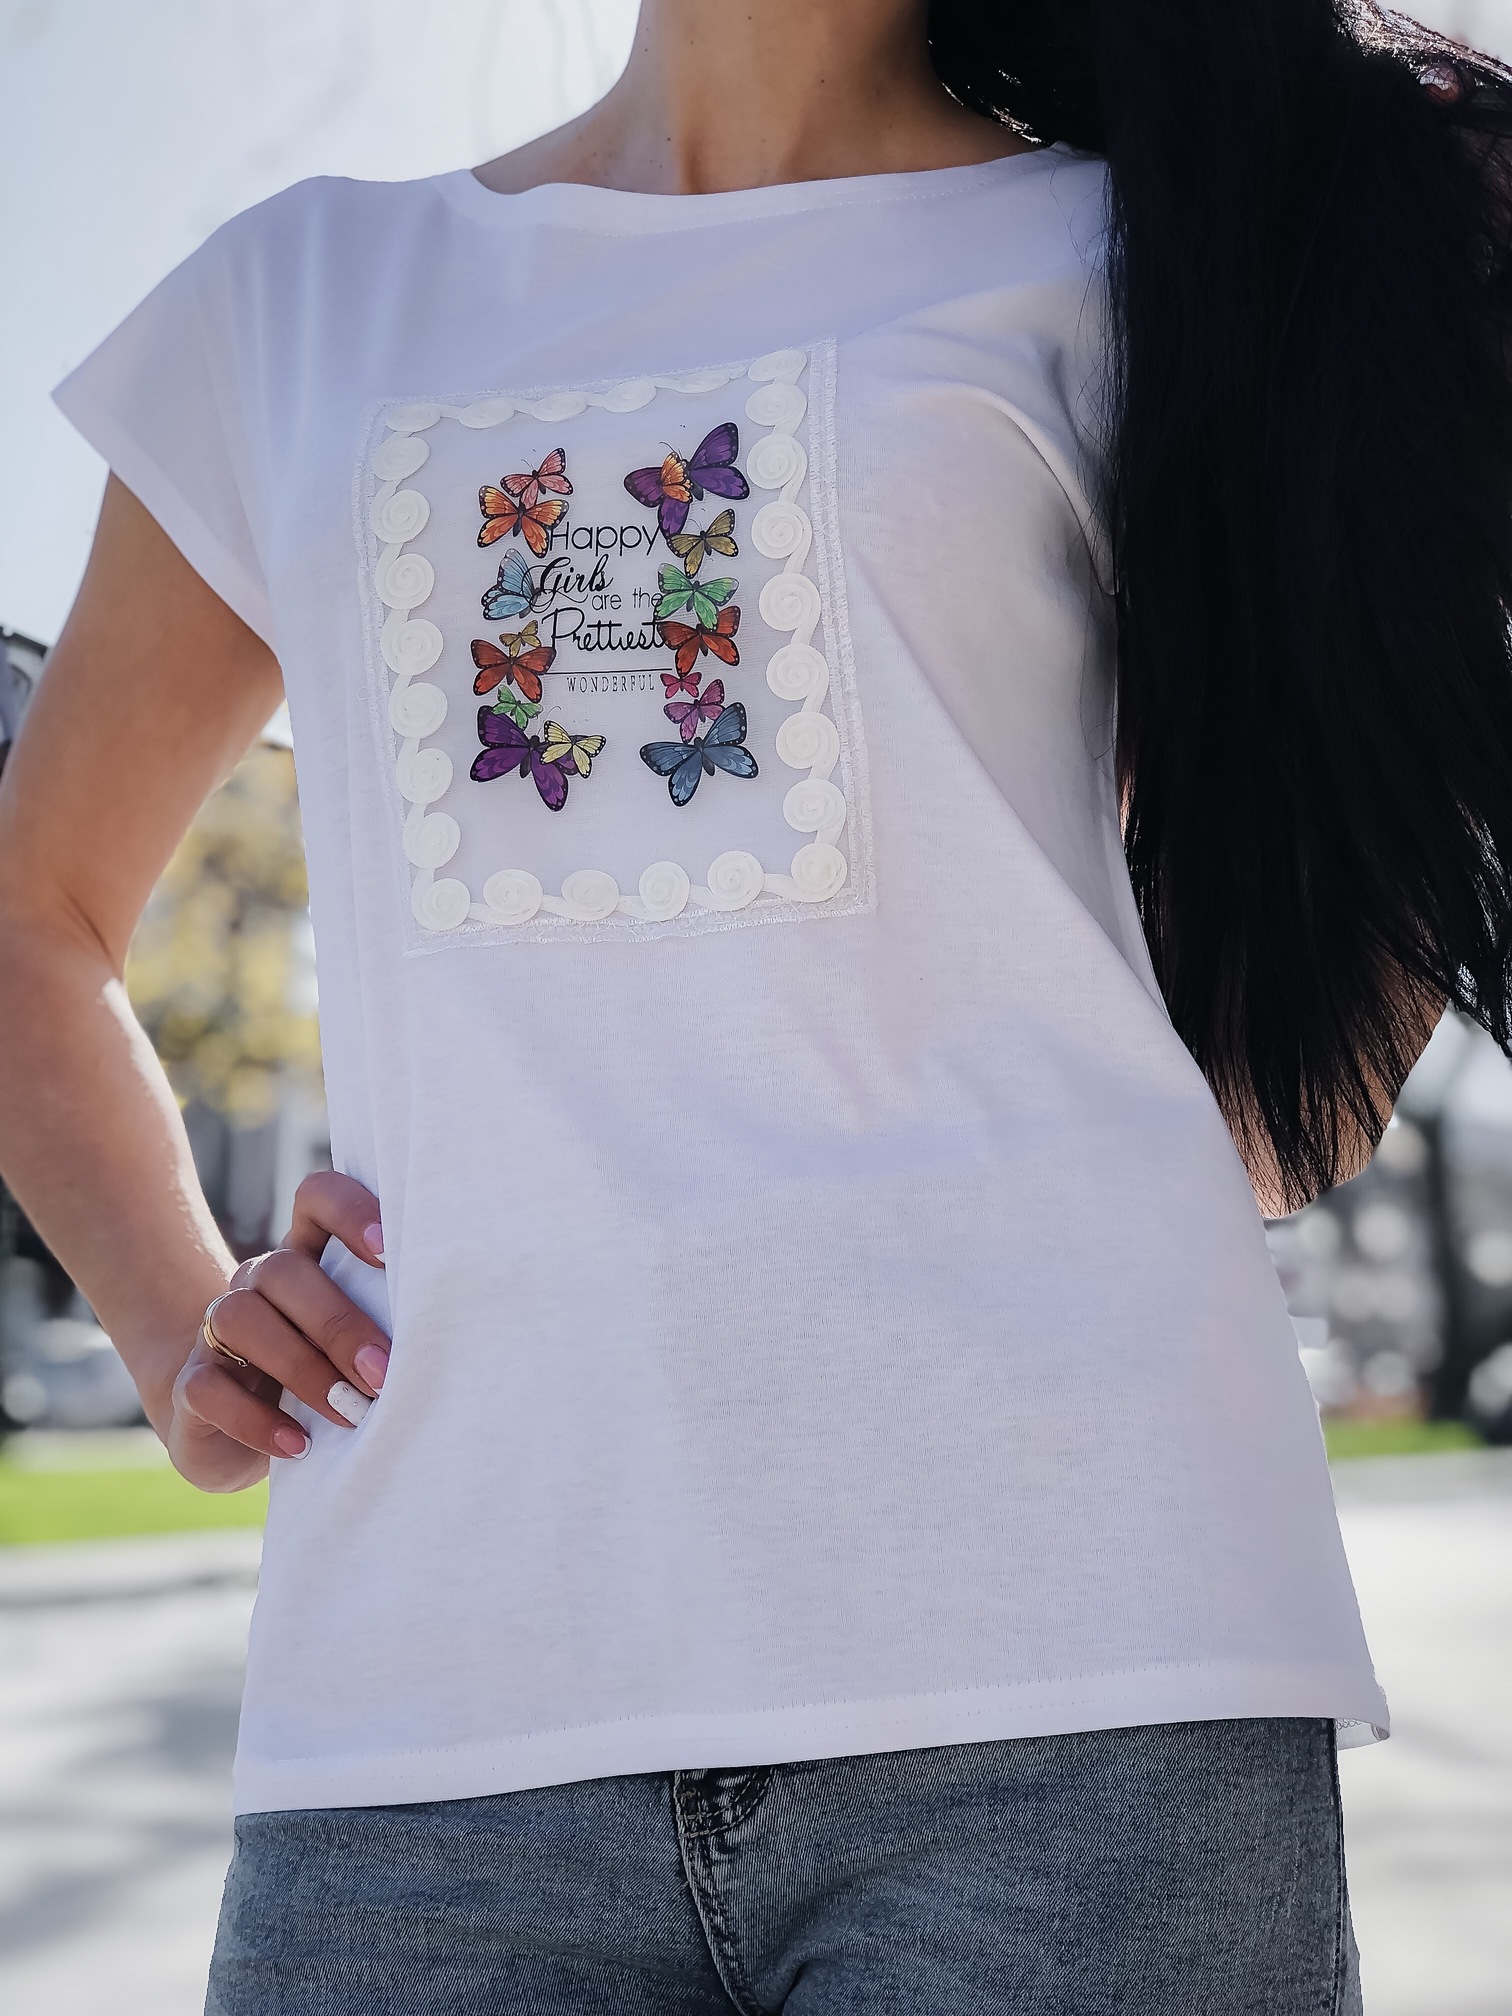 Женская  футболка Вышивка Бабочки 217, фото 2